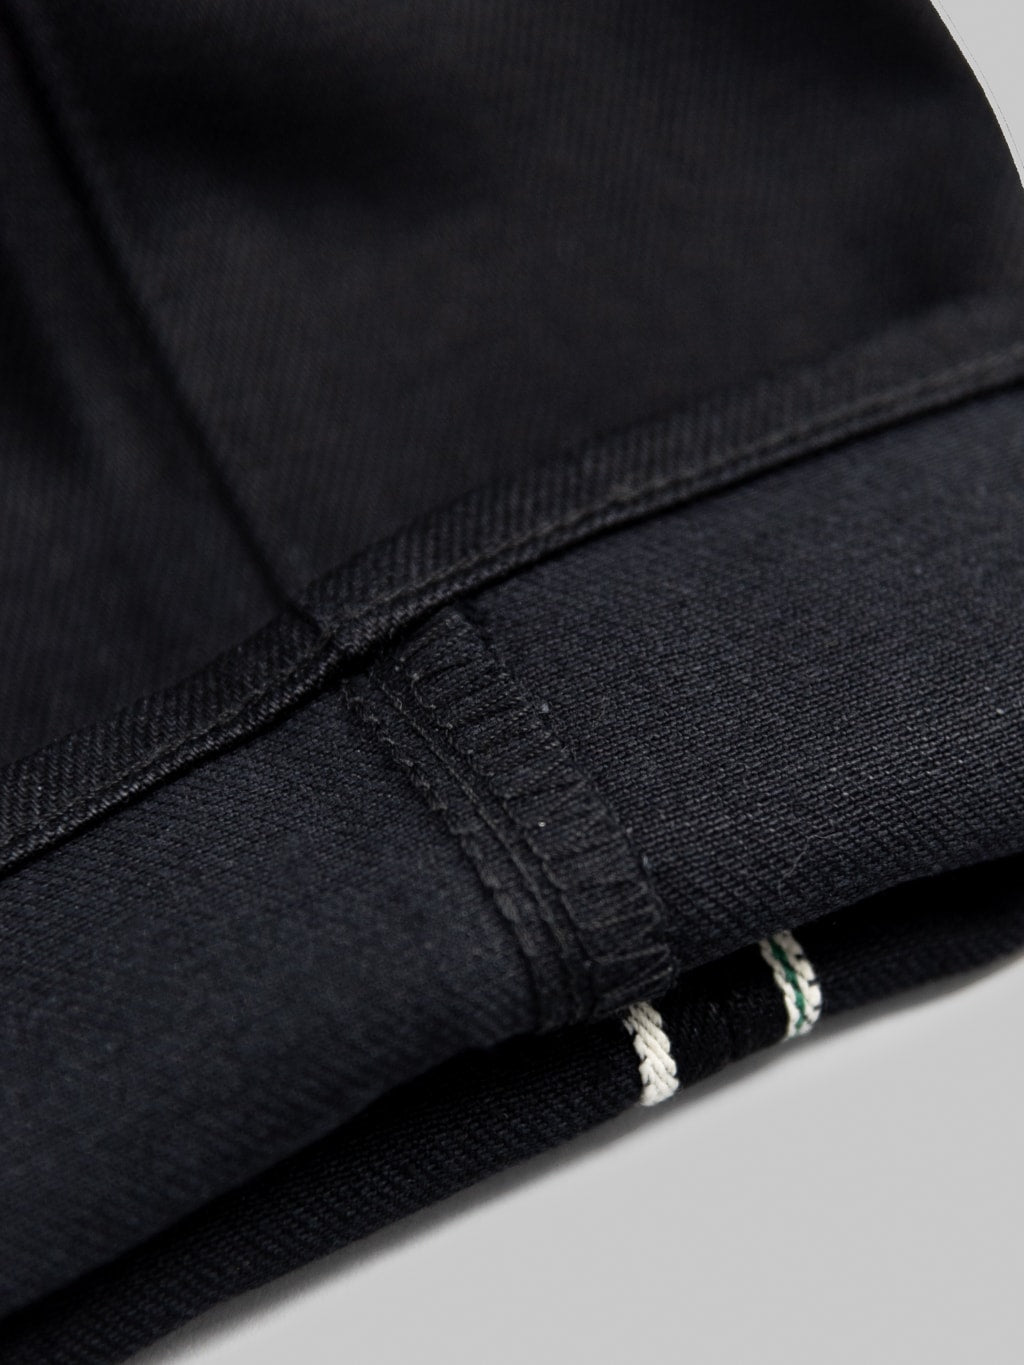 Stevenson Overall Big Sur 210 Slim Tapered jeans solid black weft